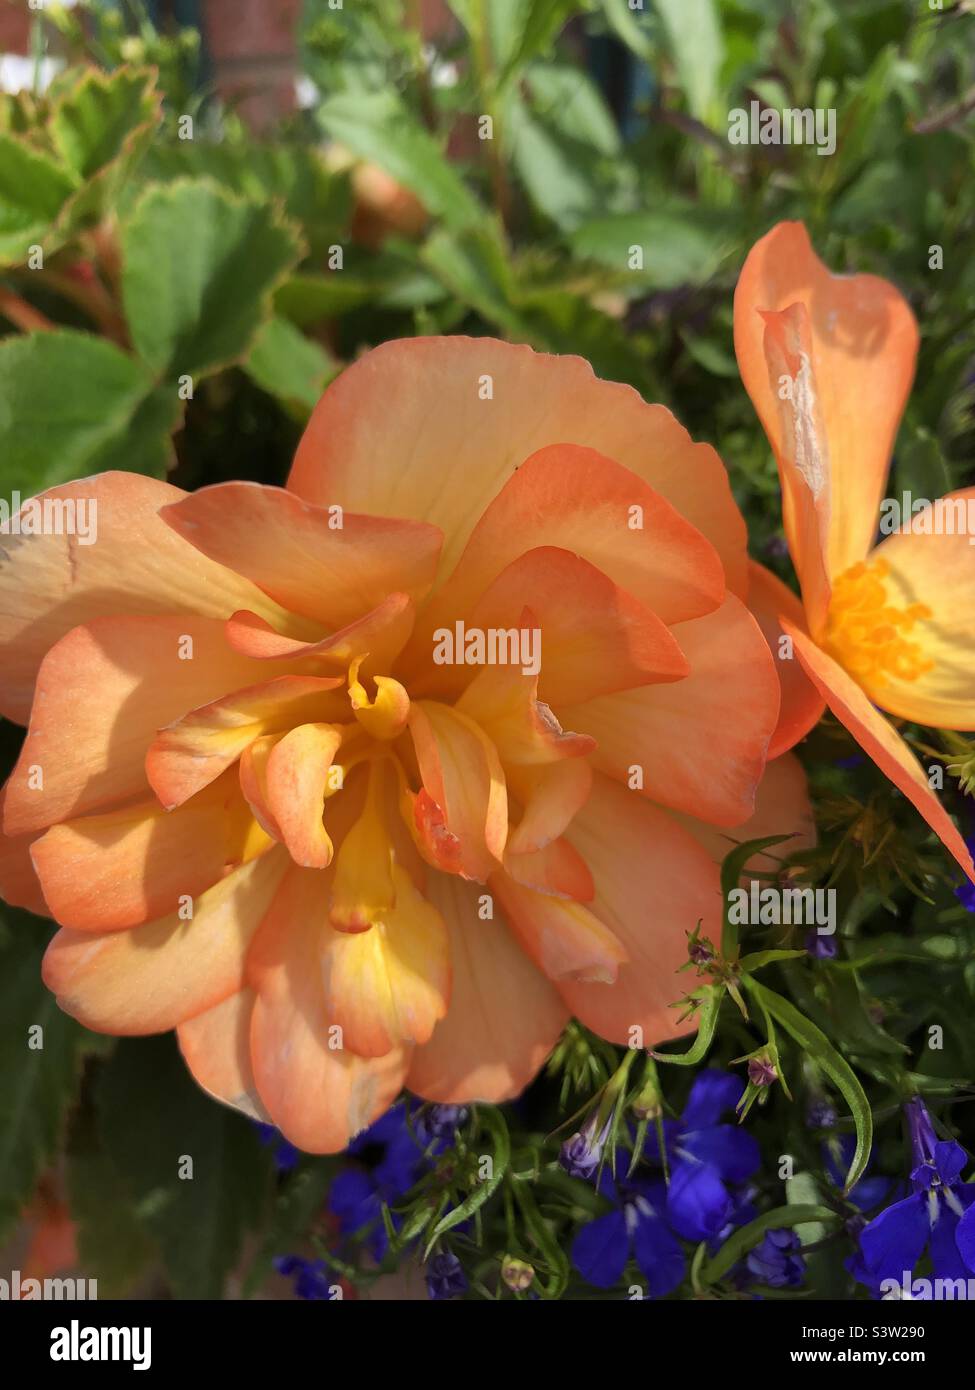 Summer flowering begonia Stock Photo